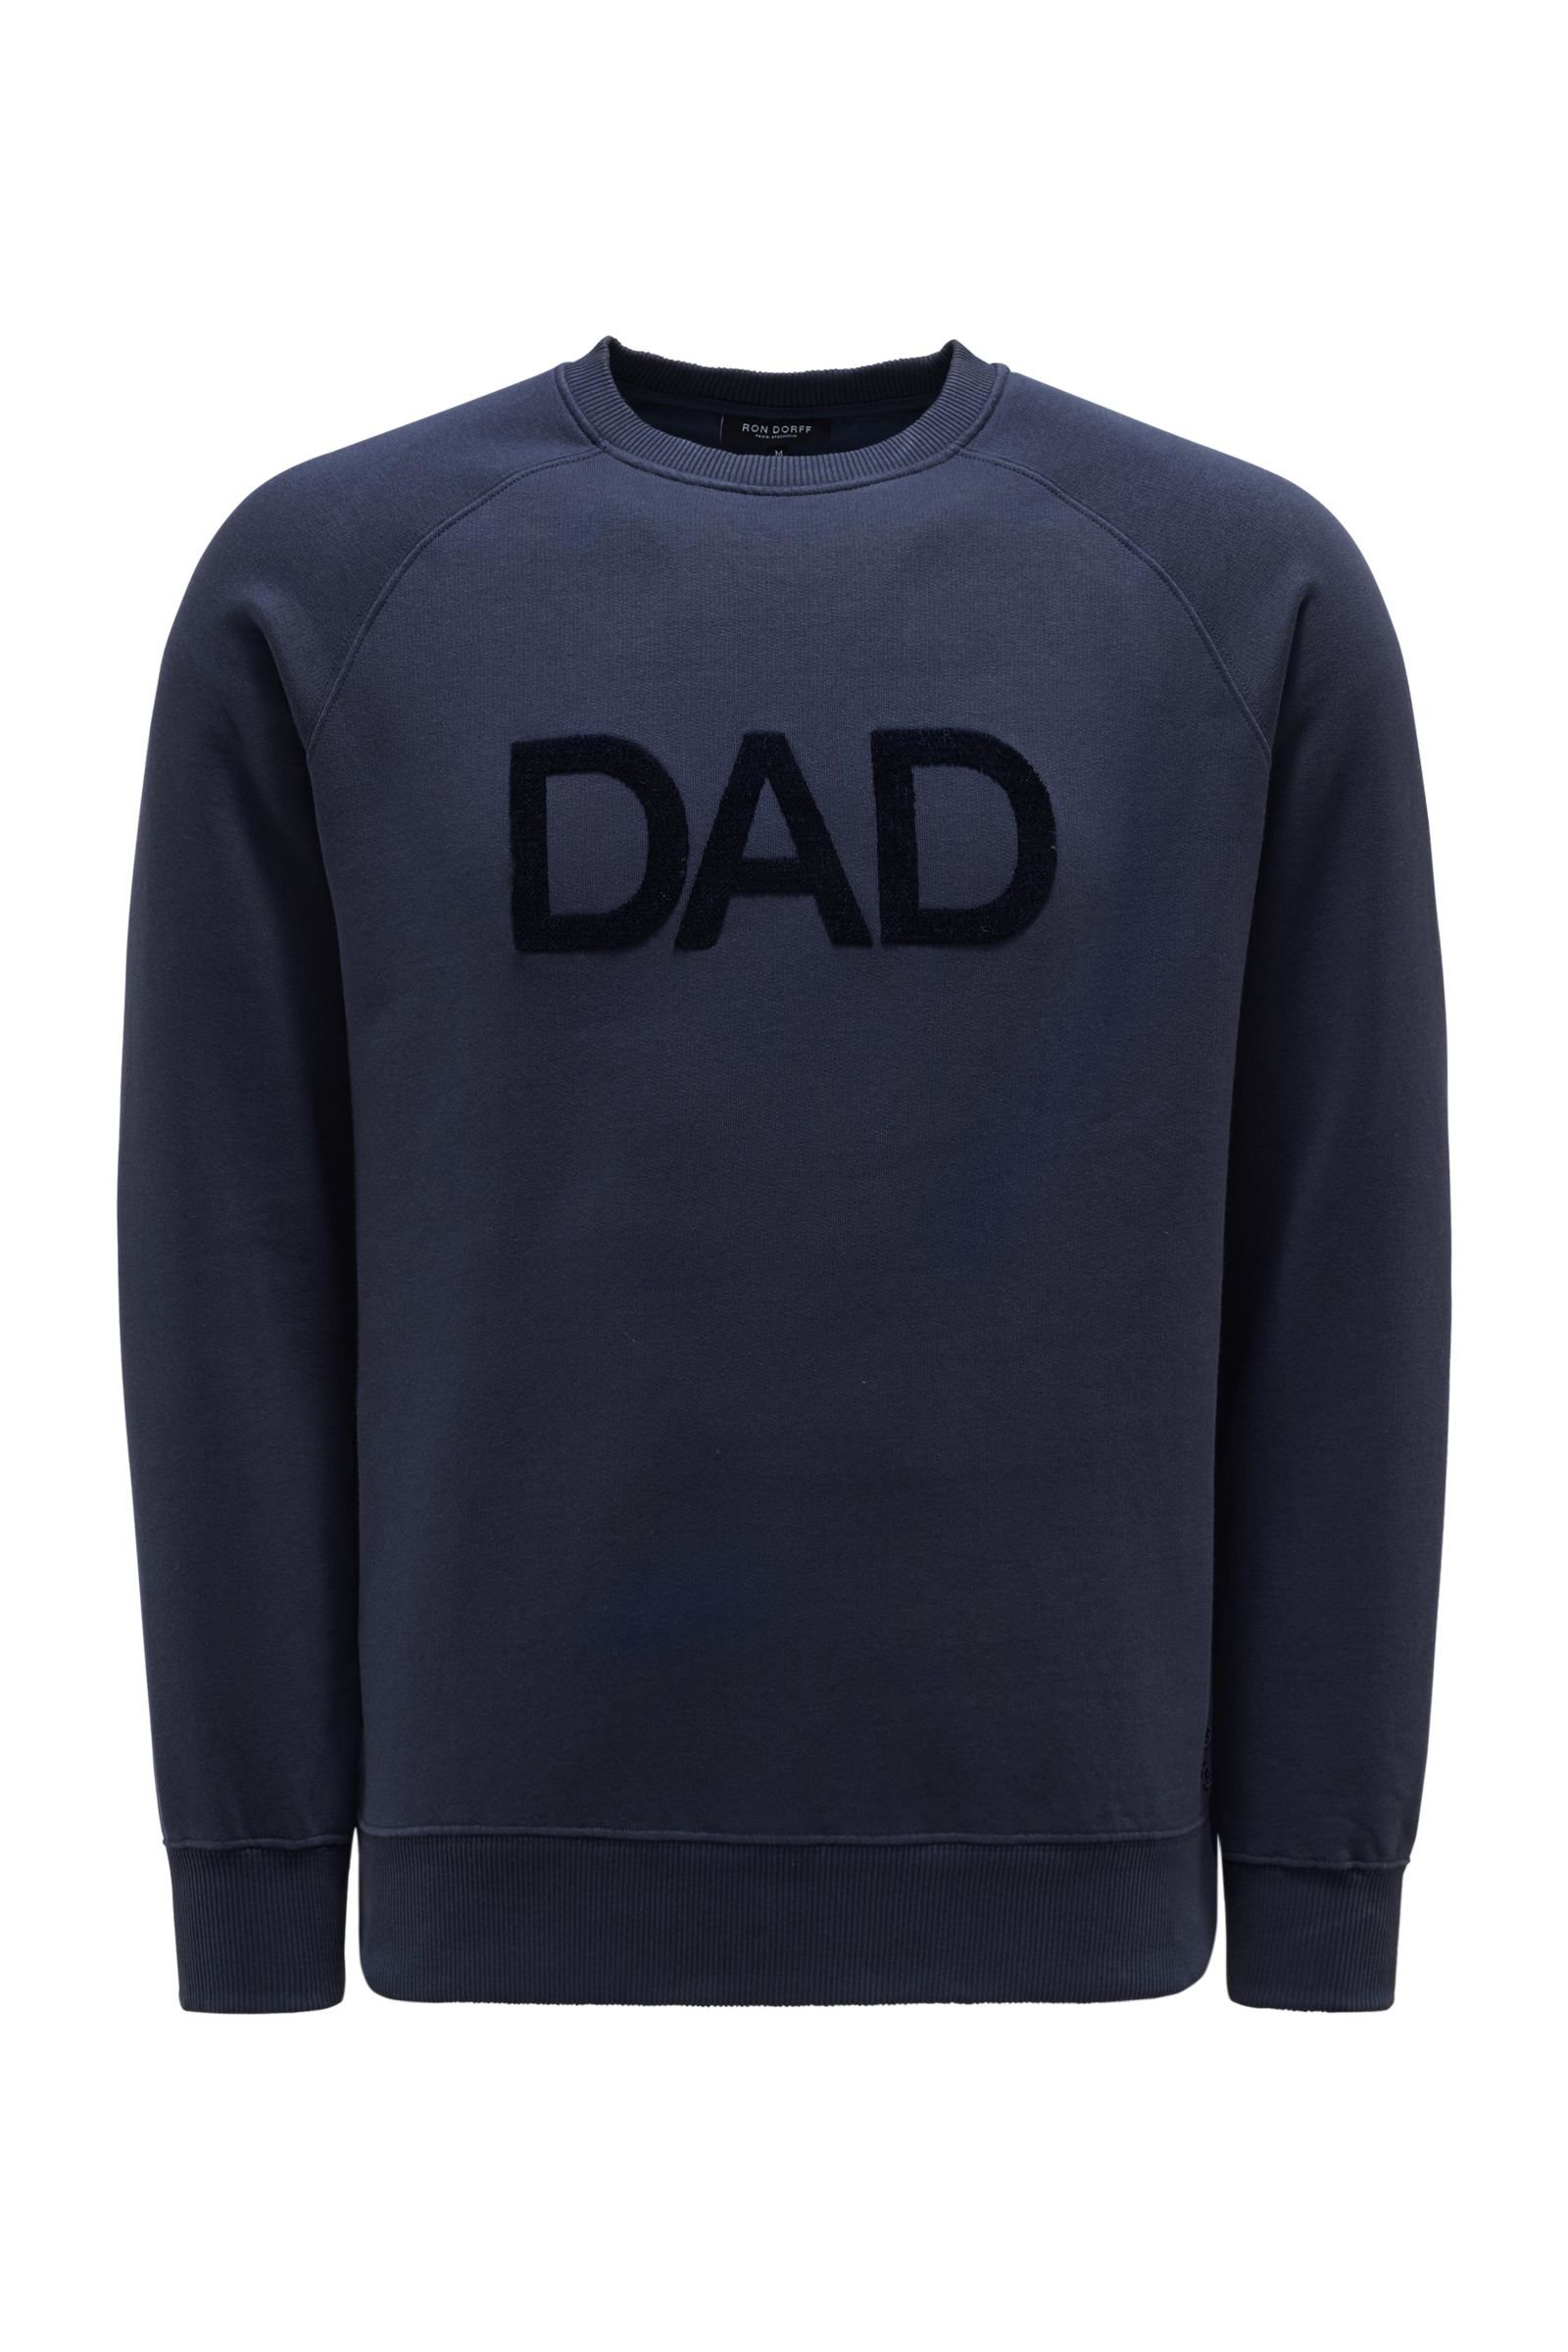 Crew neck sweatshirt 'Dad' navy